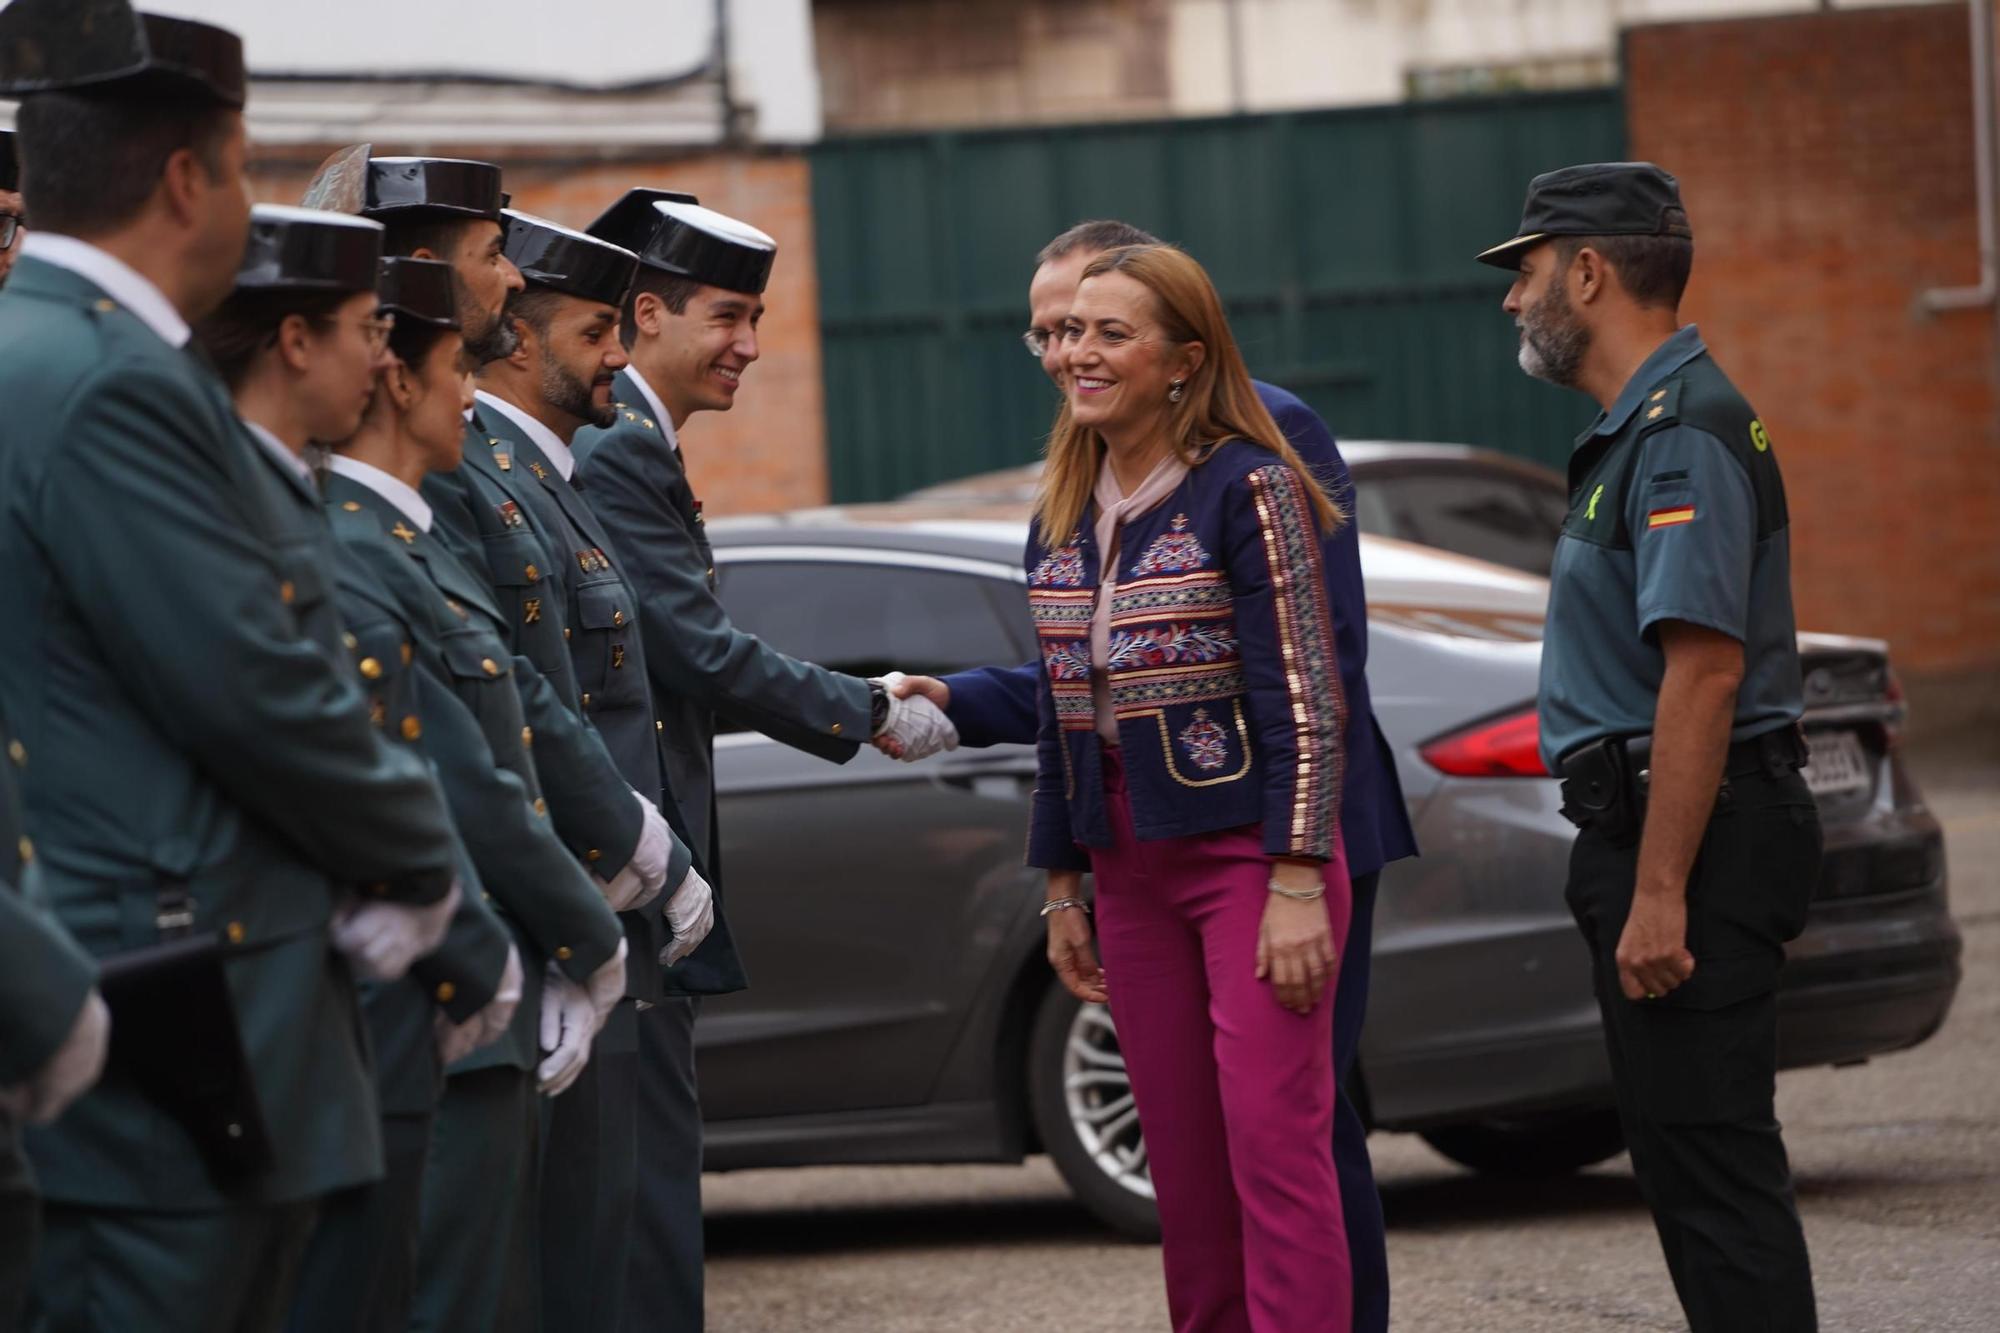 GALERÍA | Zamora recibe a los nuevos agentes de la Guardia Civil